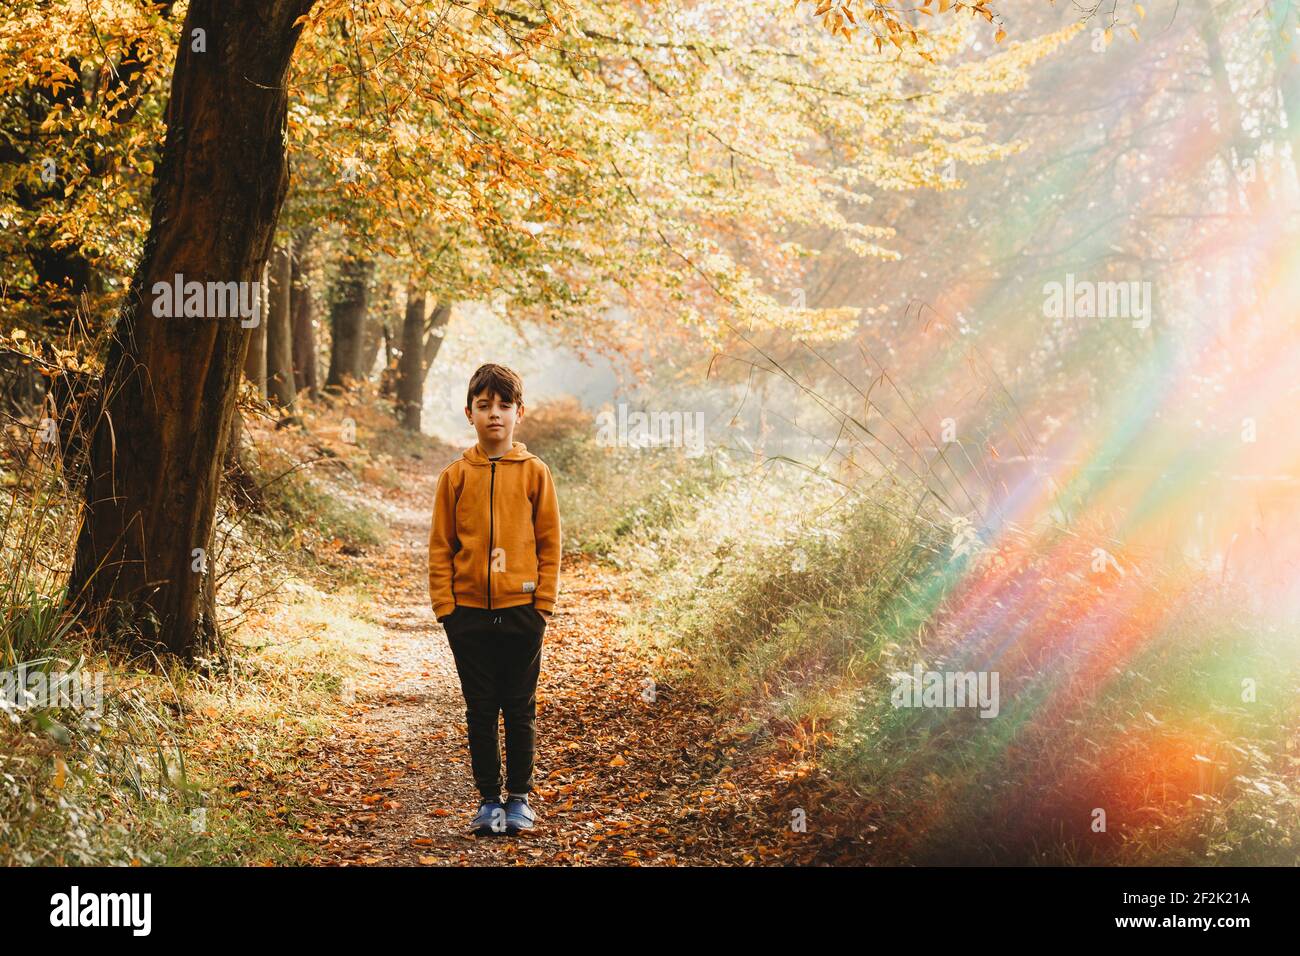 Ragazzo in piedi sul sentiero sotto l'albero con luce arcobaleno flare Foto Stock